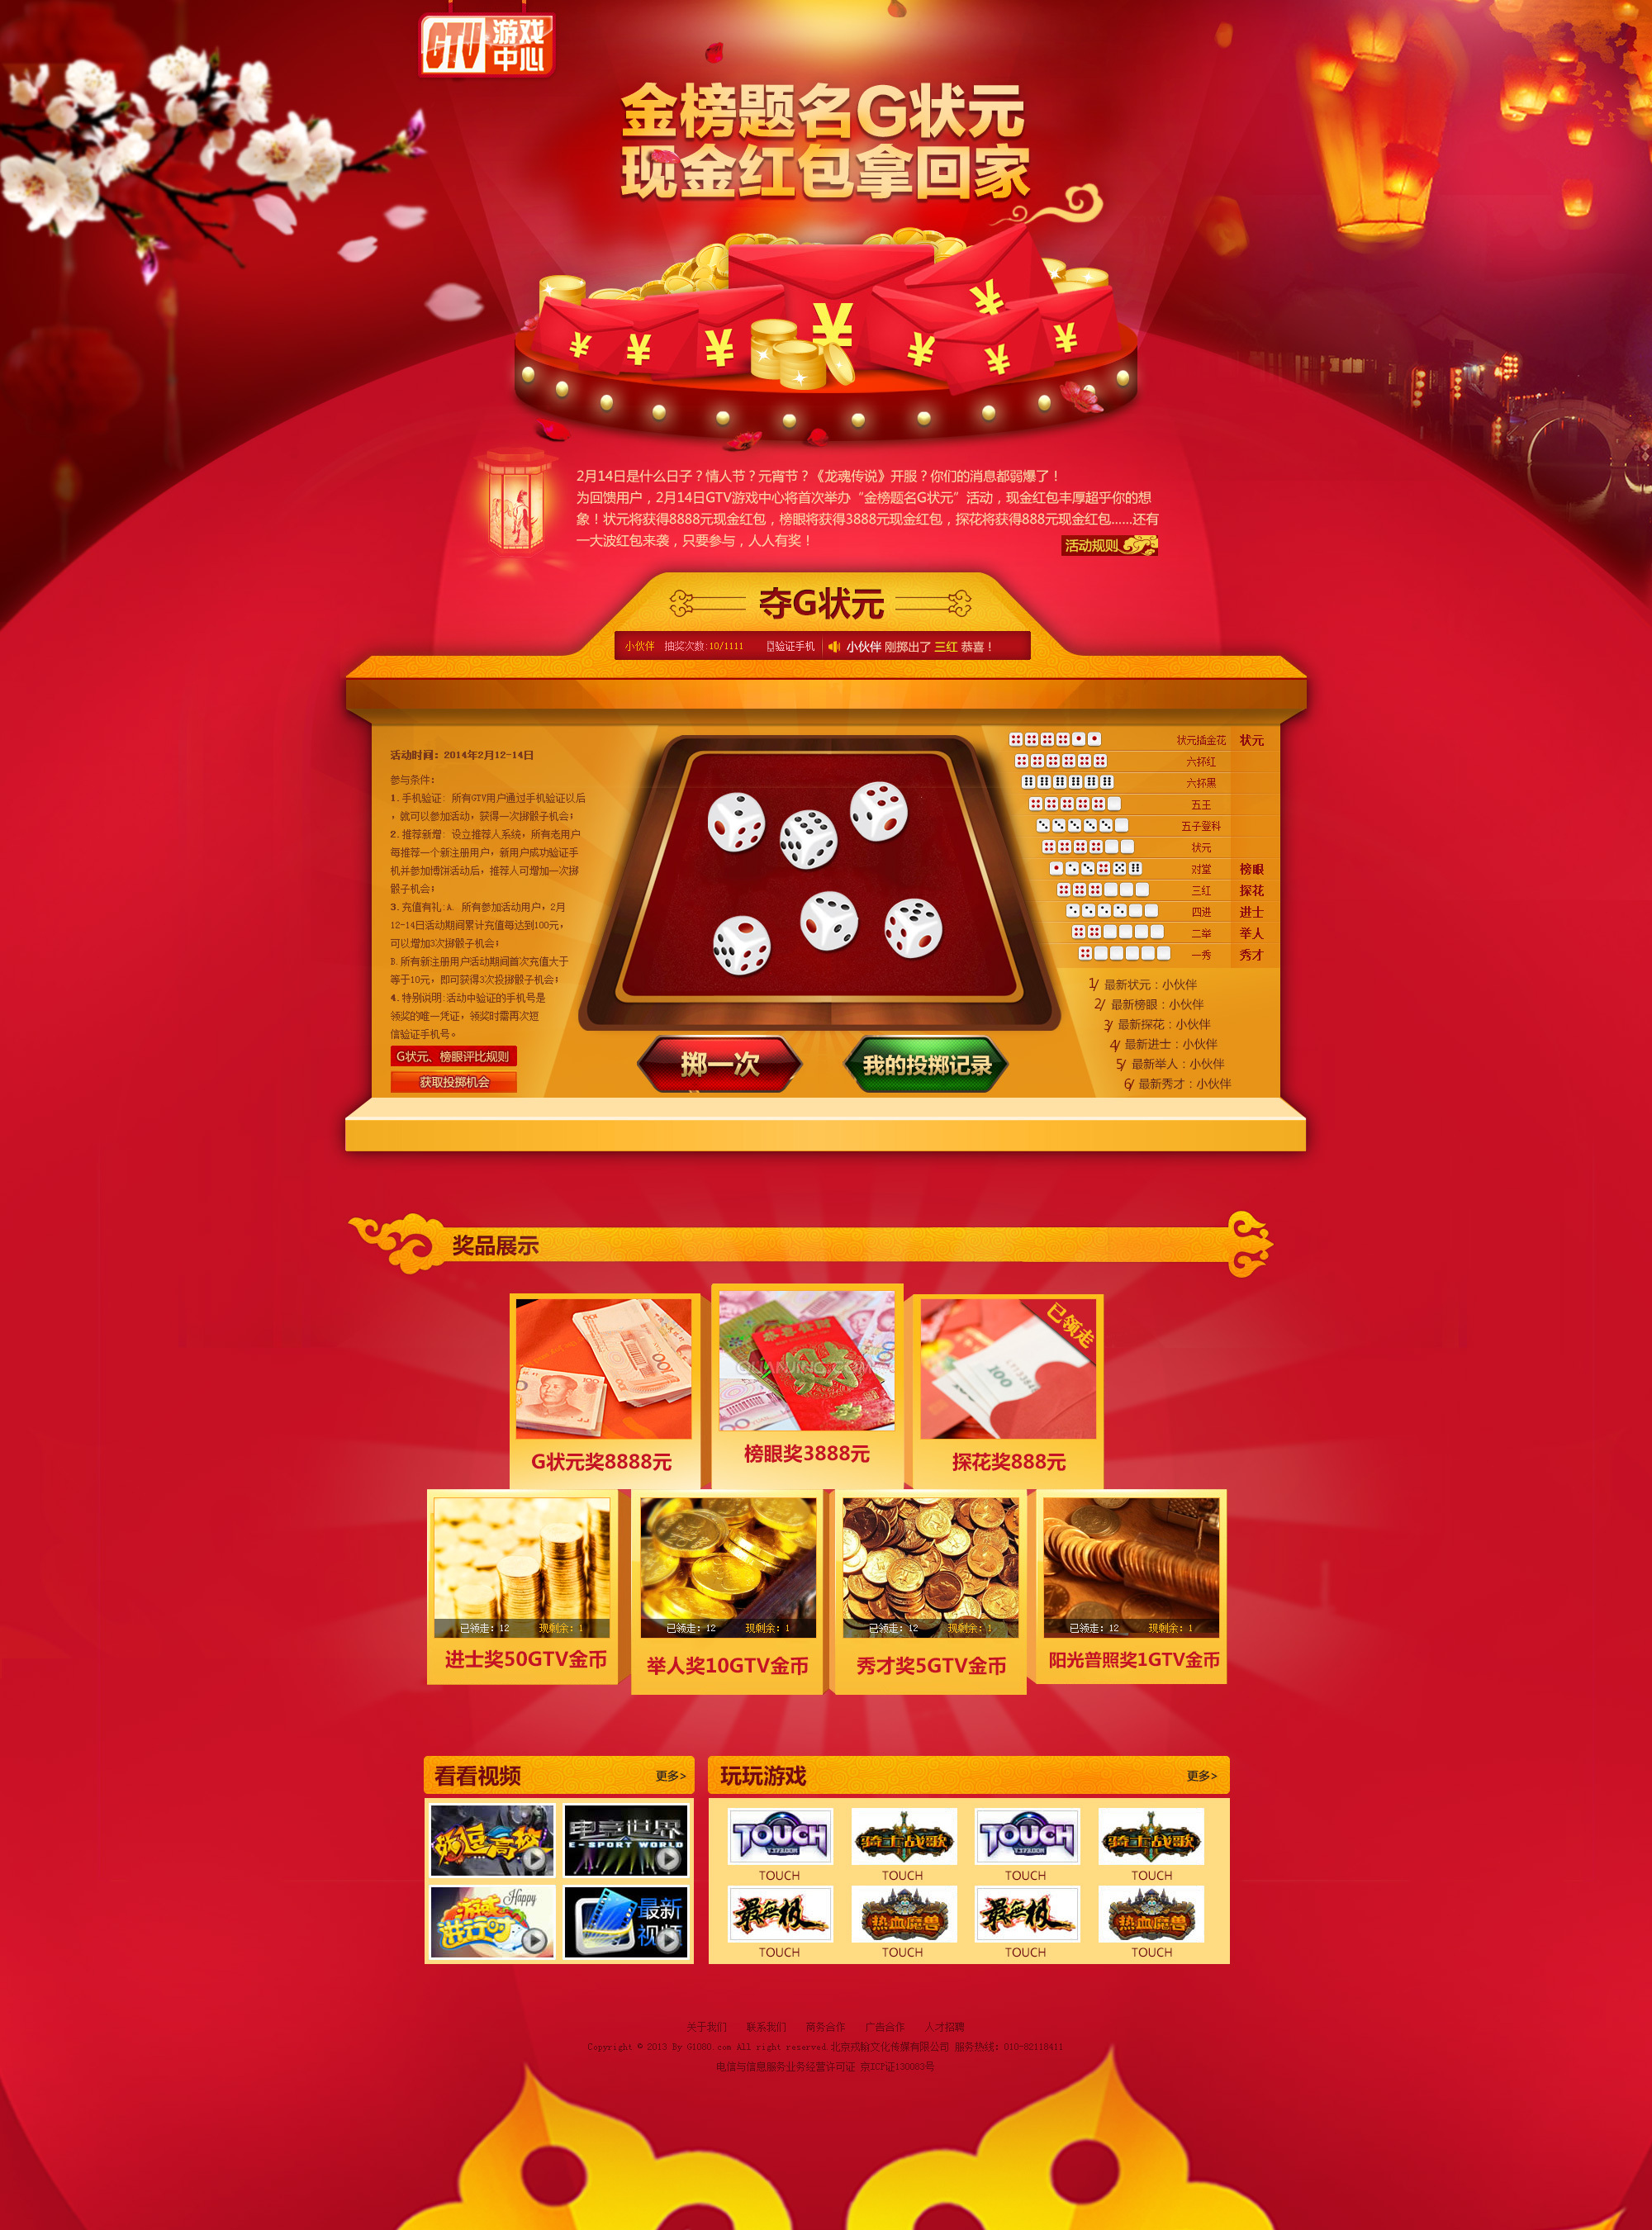 赌博,掷骰子赌博游戏照片摄影图片_ID:142183715-Veer图库